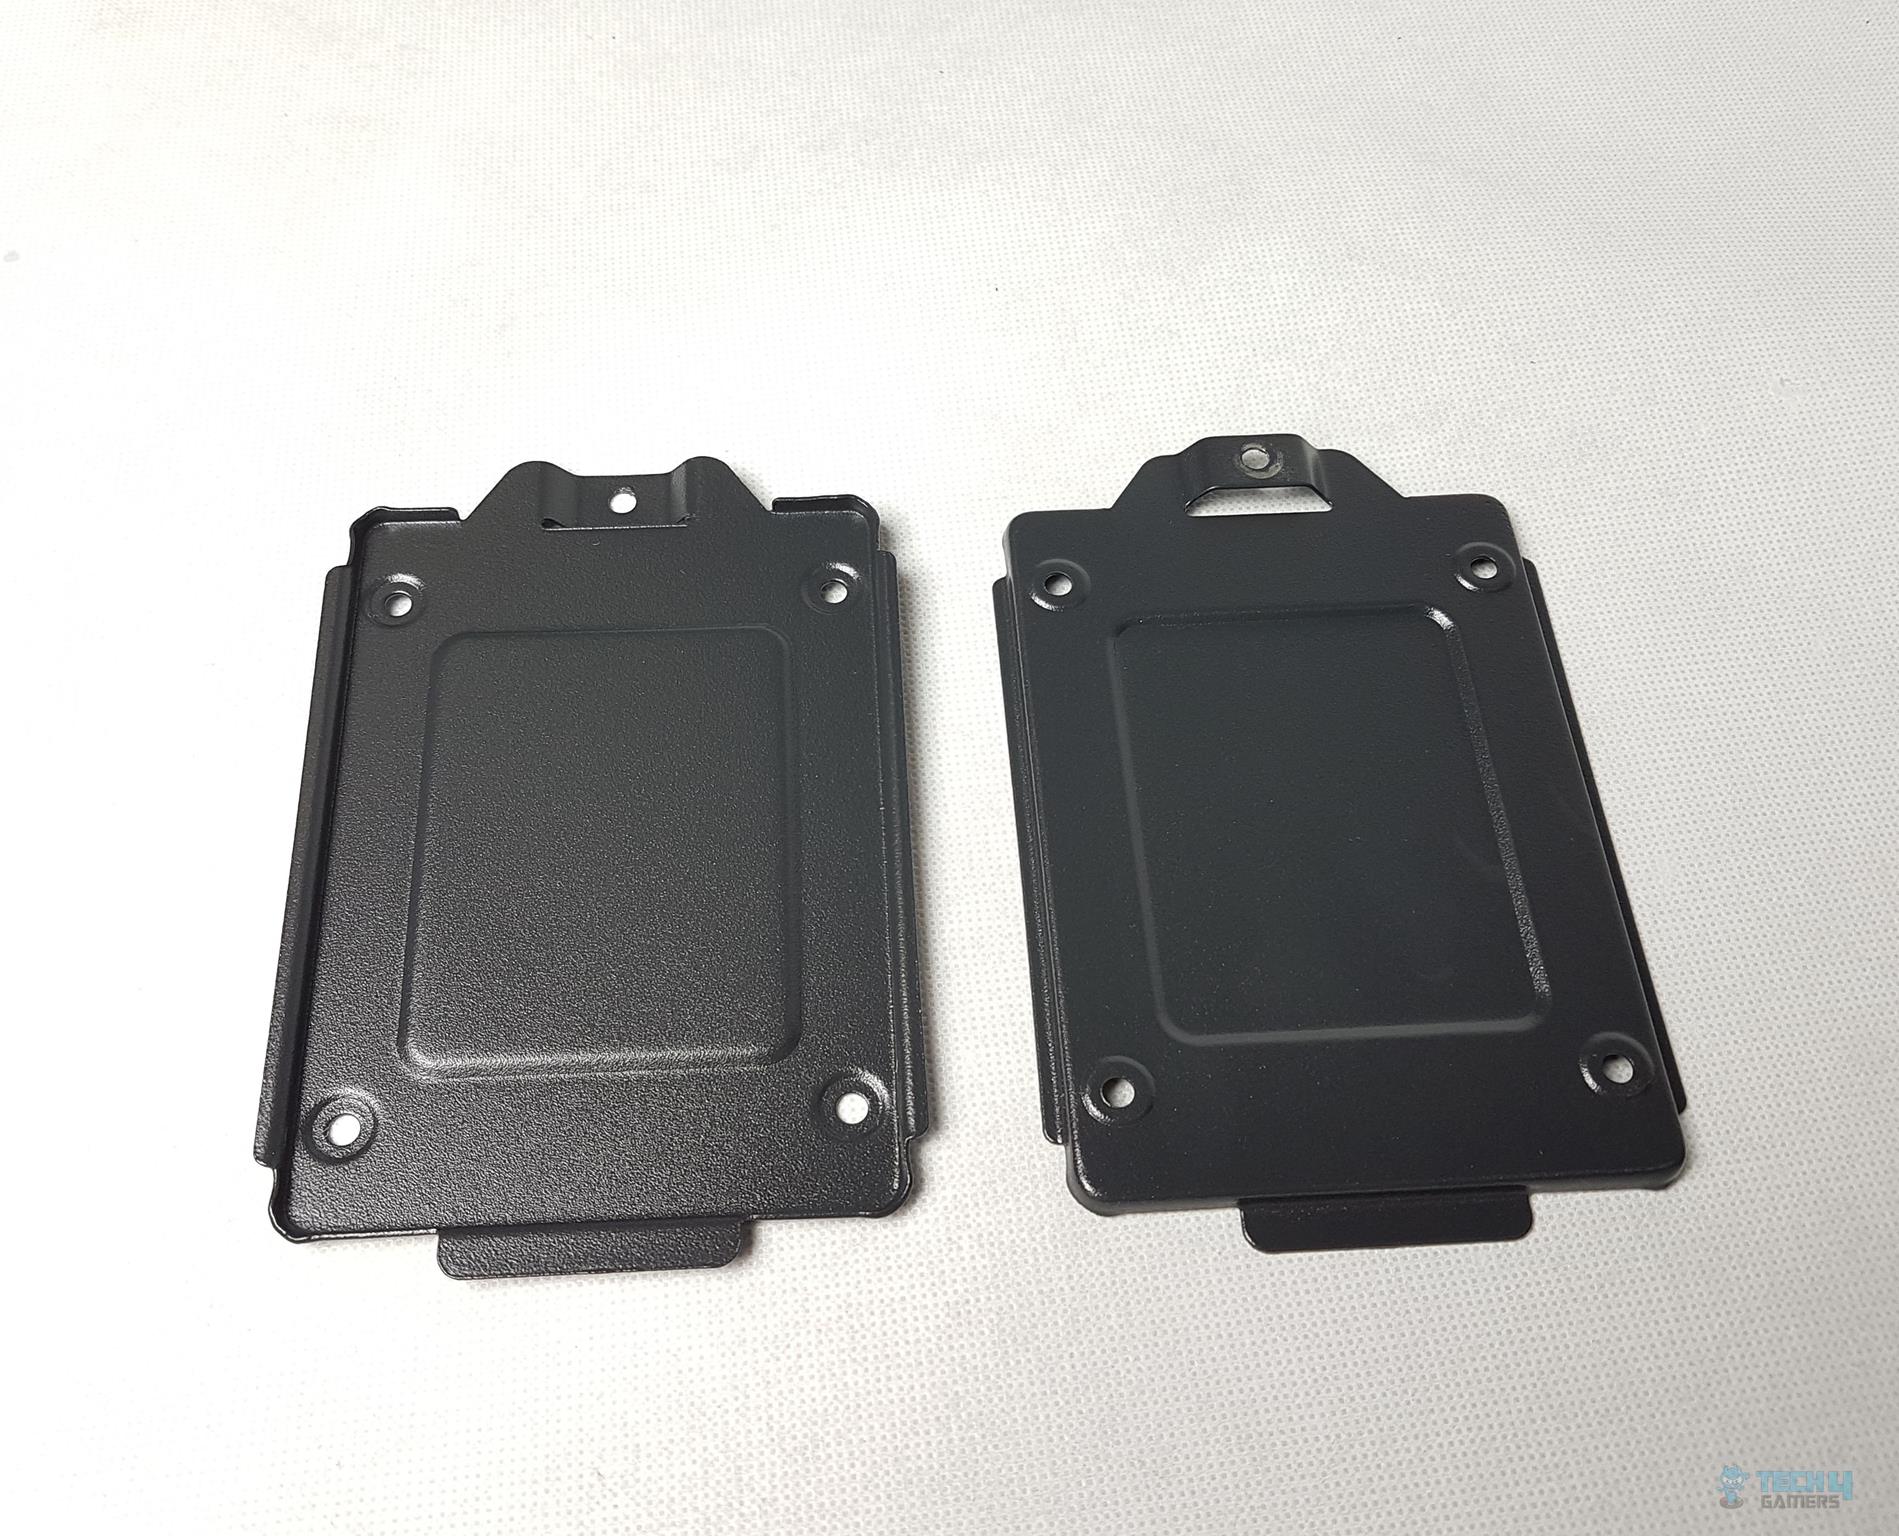  Aerocool Quartz Revo RGB Mid-Tower Chassis — The SSD brackets